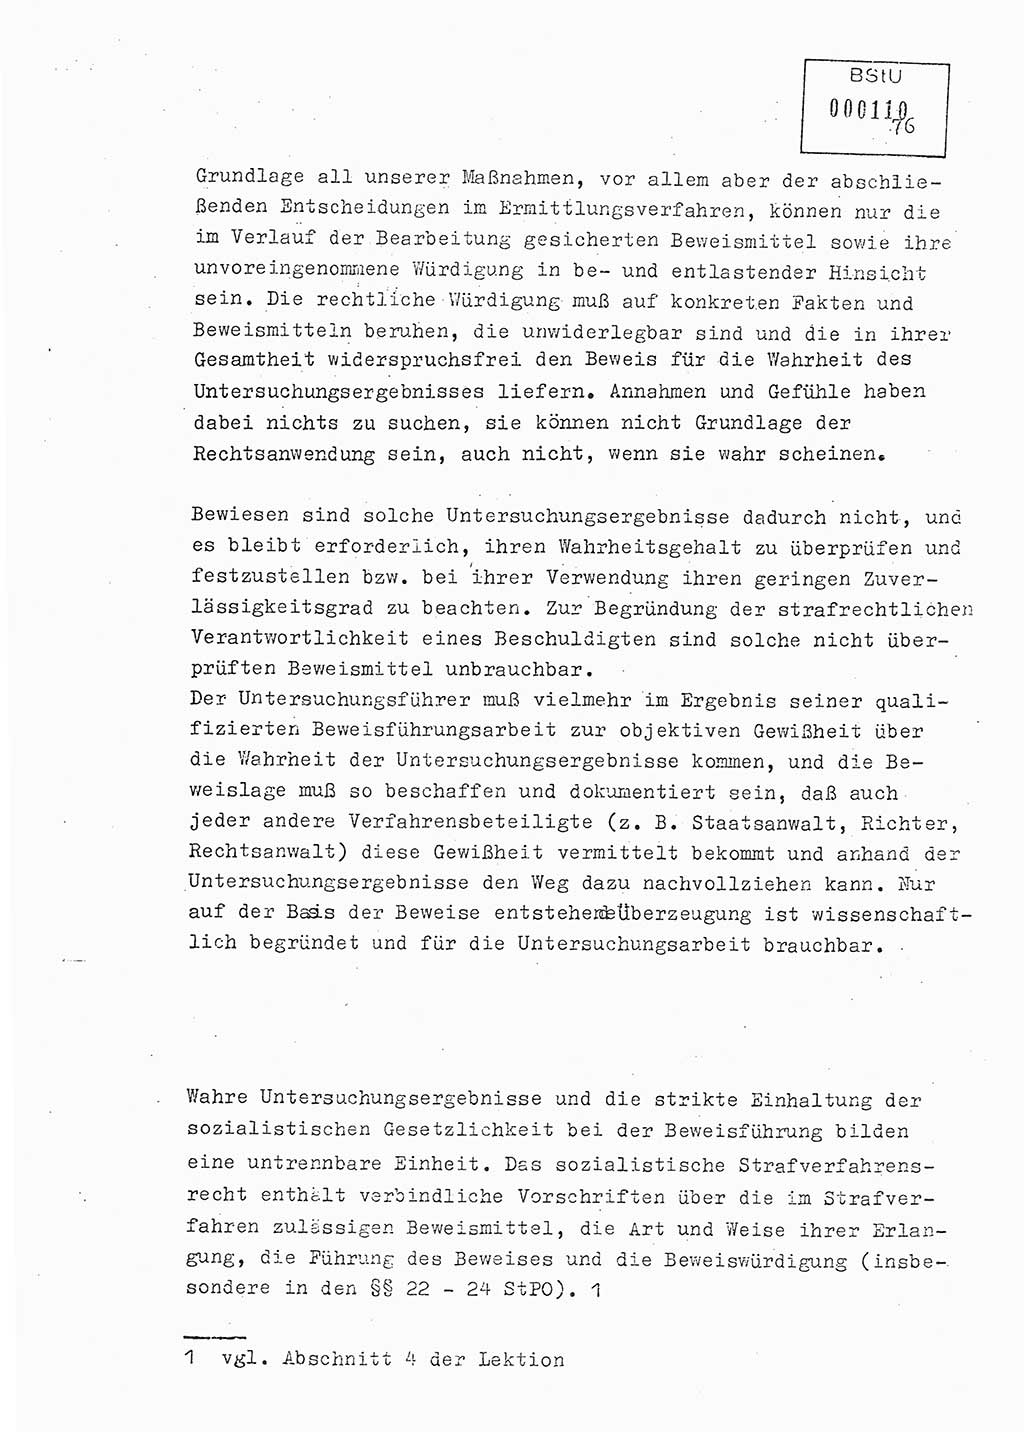 Lektion Ministerium für Staatssicherheit (MfS) [Deutsche Demokratische Republik (DDR)], Hauptabteilung (HA) Ⅸ, Berlin 1979, Seite 76 (Lekt. Bew.-Fü. EV MfS DDR HA Ⅸ 1979, S. 76)